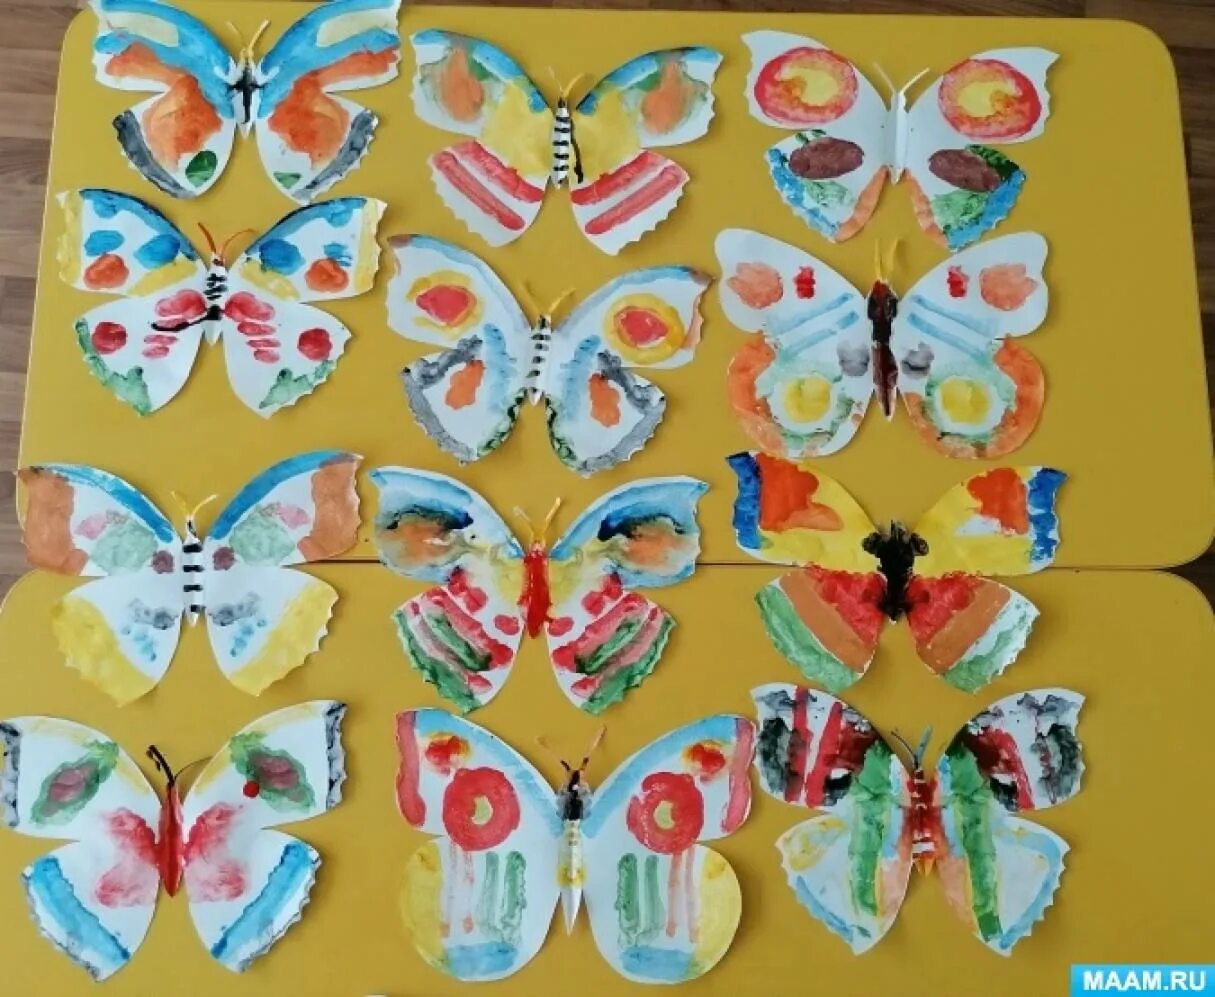 Рисование бабочка старшая группа. Рисование в старшей группе бабочки нарядные. Аппликация бабочка в старшей группе. День бабочек в детском саду старшая группа. Занятие бабочки средняя группа